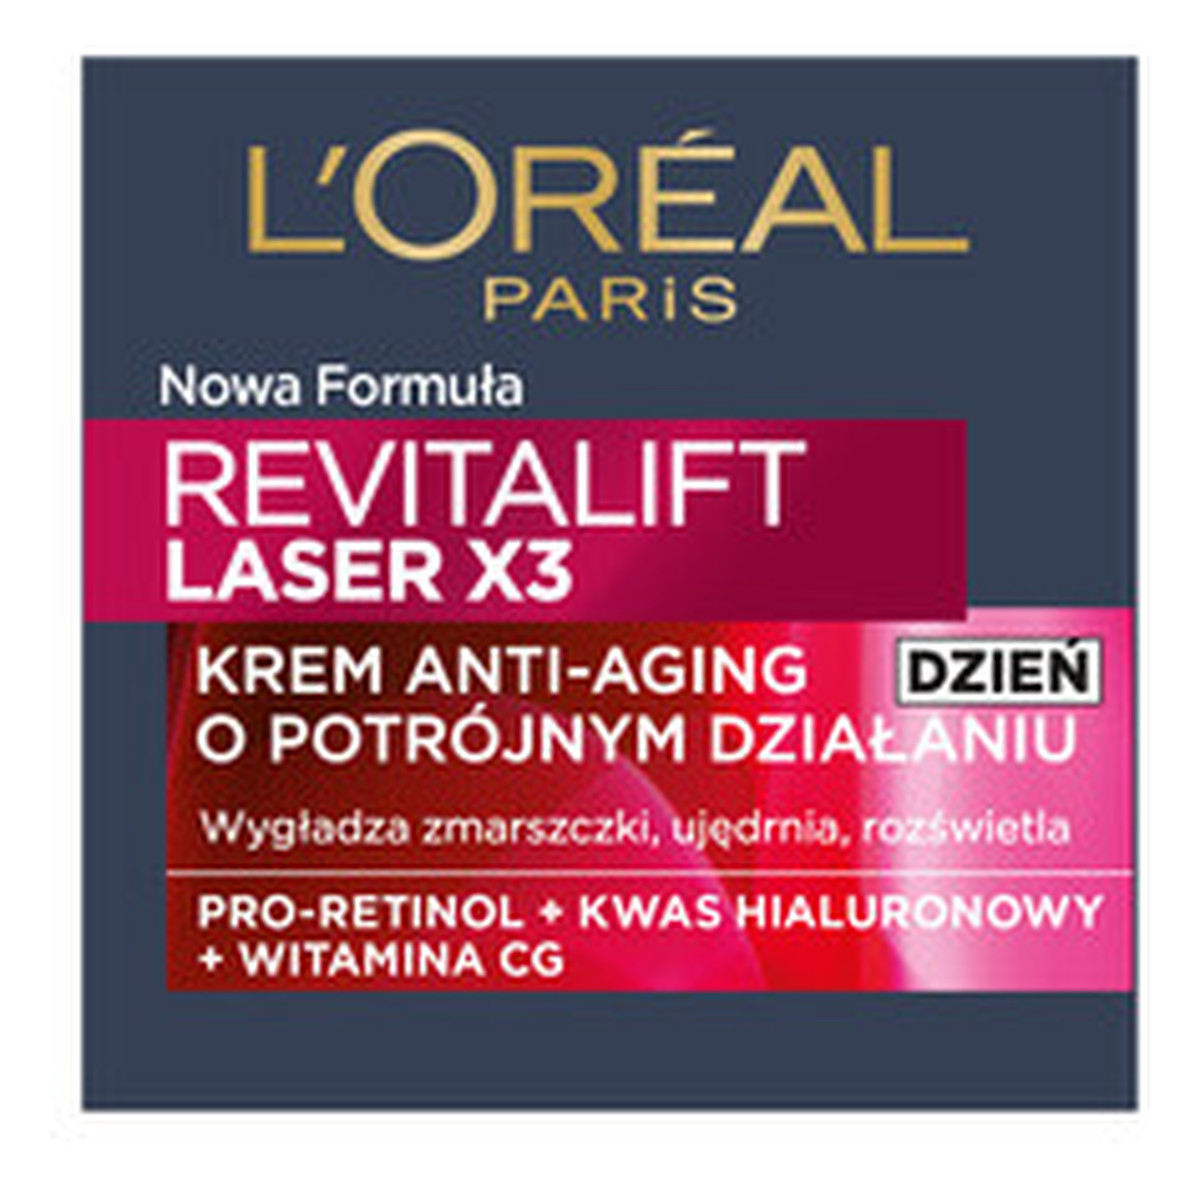 L'Oreal Paris LASER X3 Revitalift Krem Anti Age Głęboka Regeneracja Na Dzień 50ml